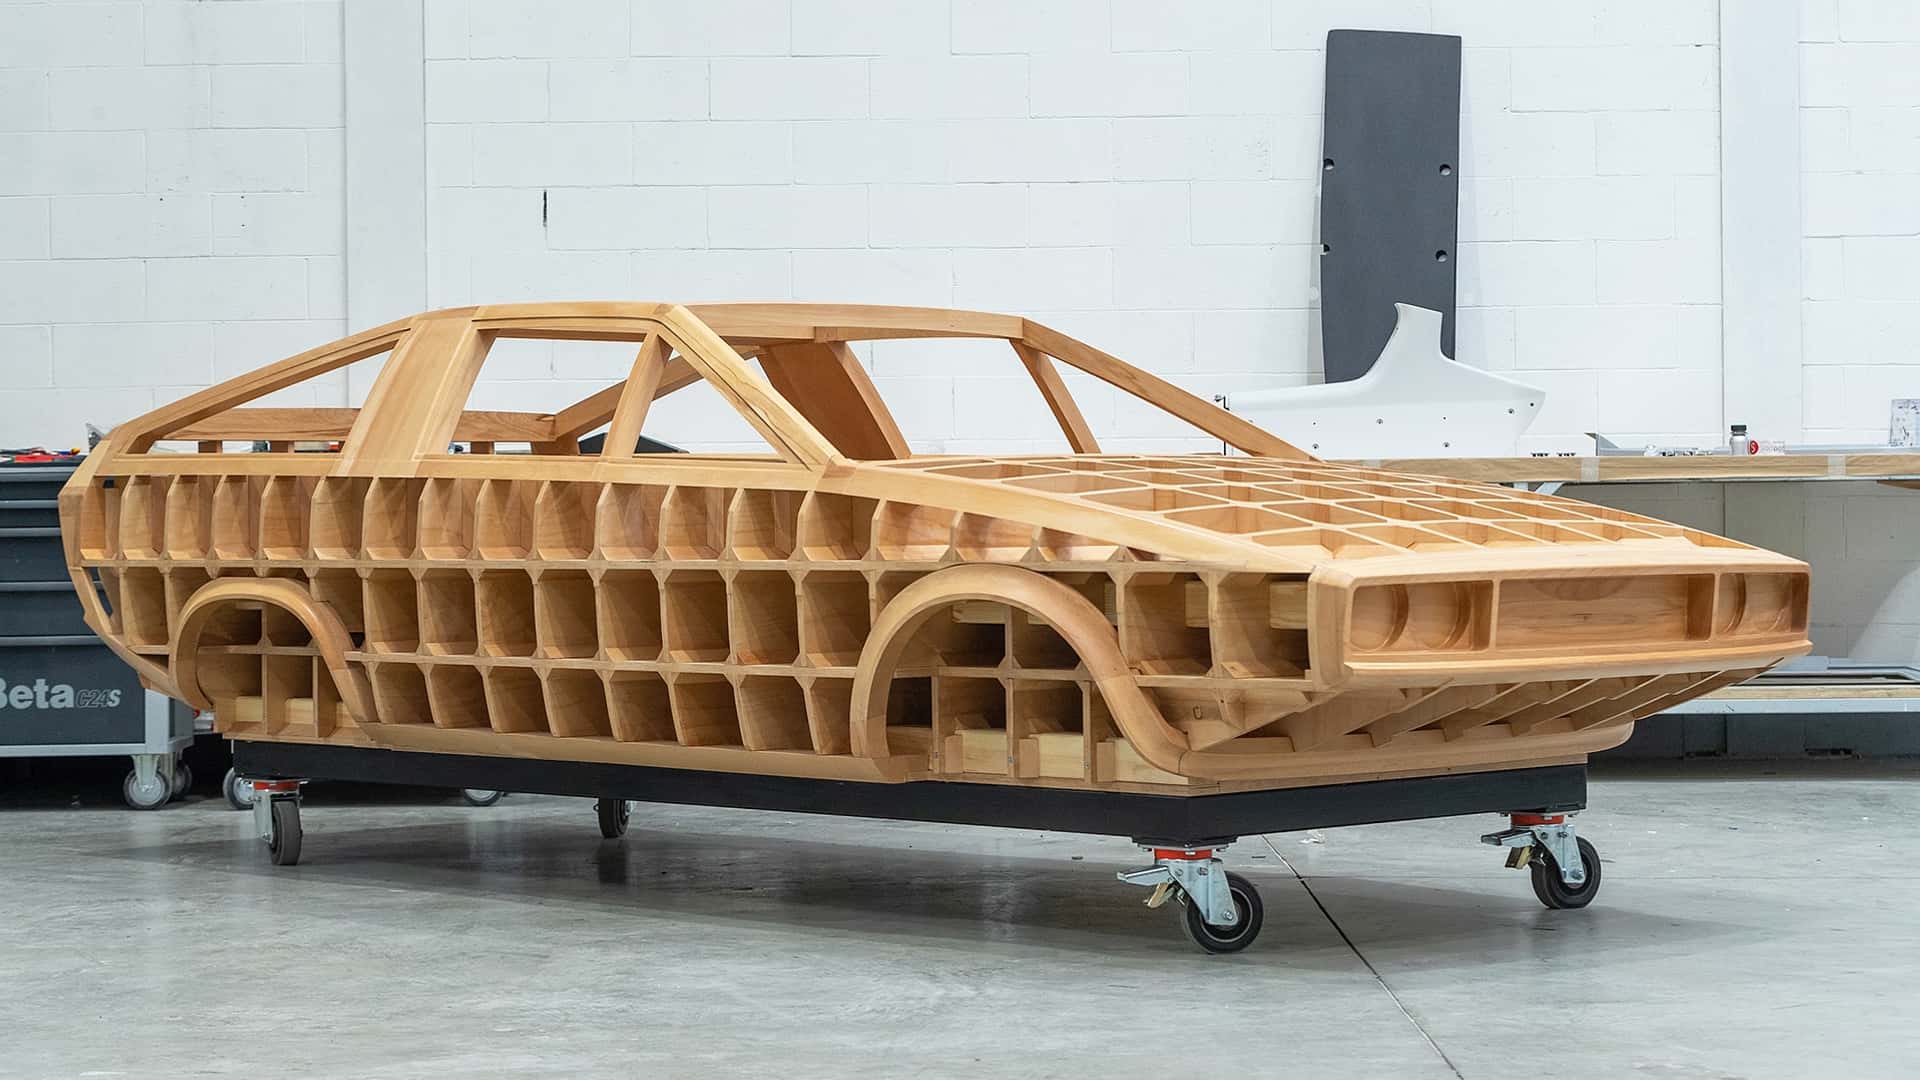 هيونداي تعيد إحياء سيارة بوني كوبيه الاختبارية الأيقونية في موديل عصري اختباري جديد 50